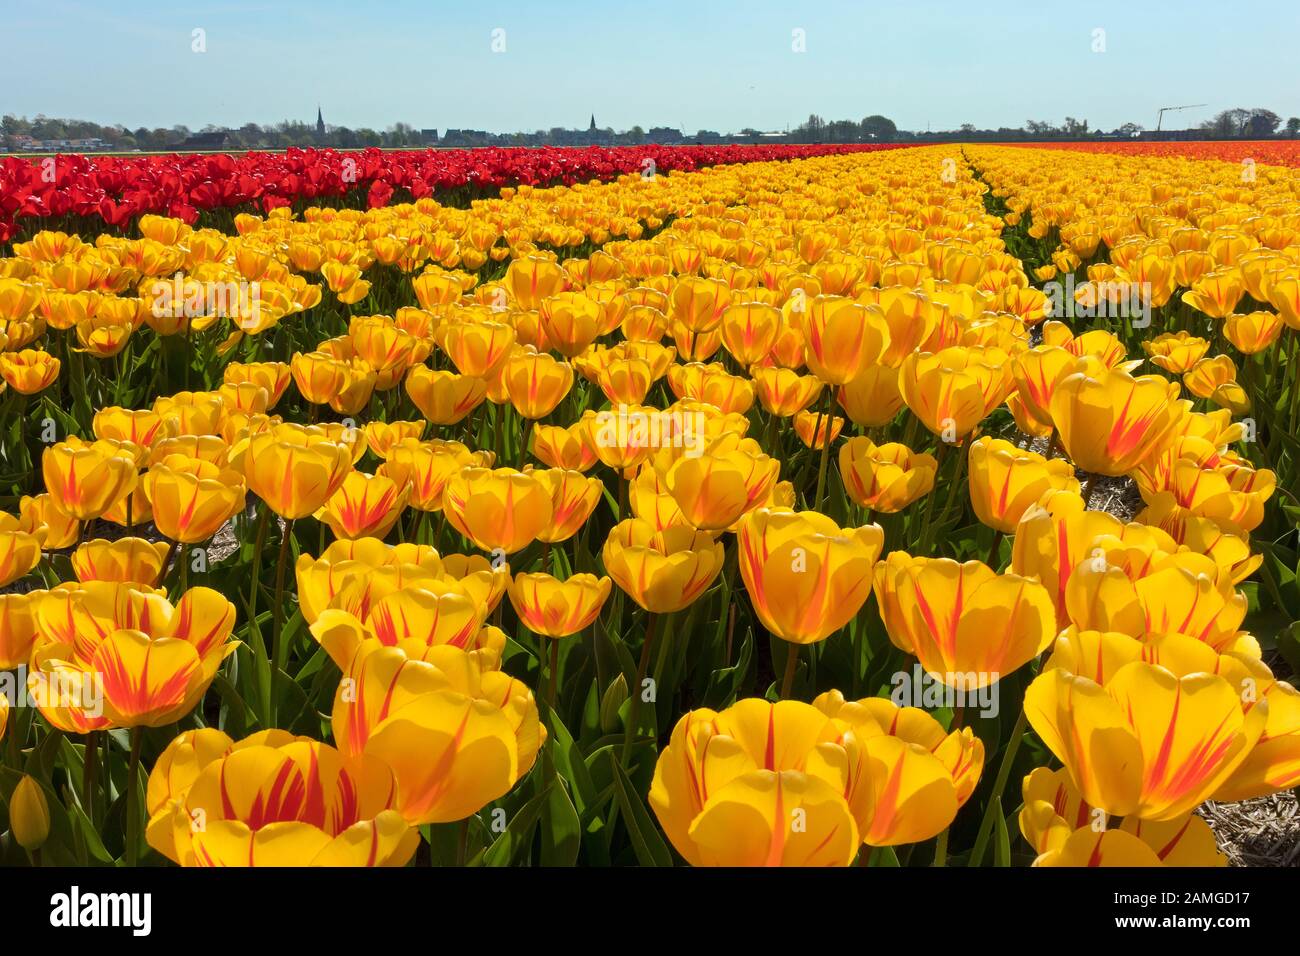 Traditionelles niederländisches Tulpenfeld mit gelben Tulpen mit roten Streifen in einer Reihe in unmittelbarer Nähe Stockfoto